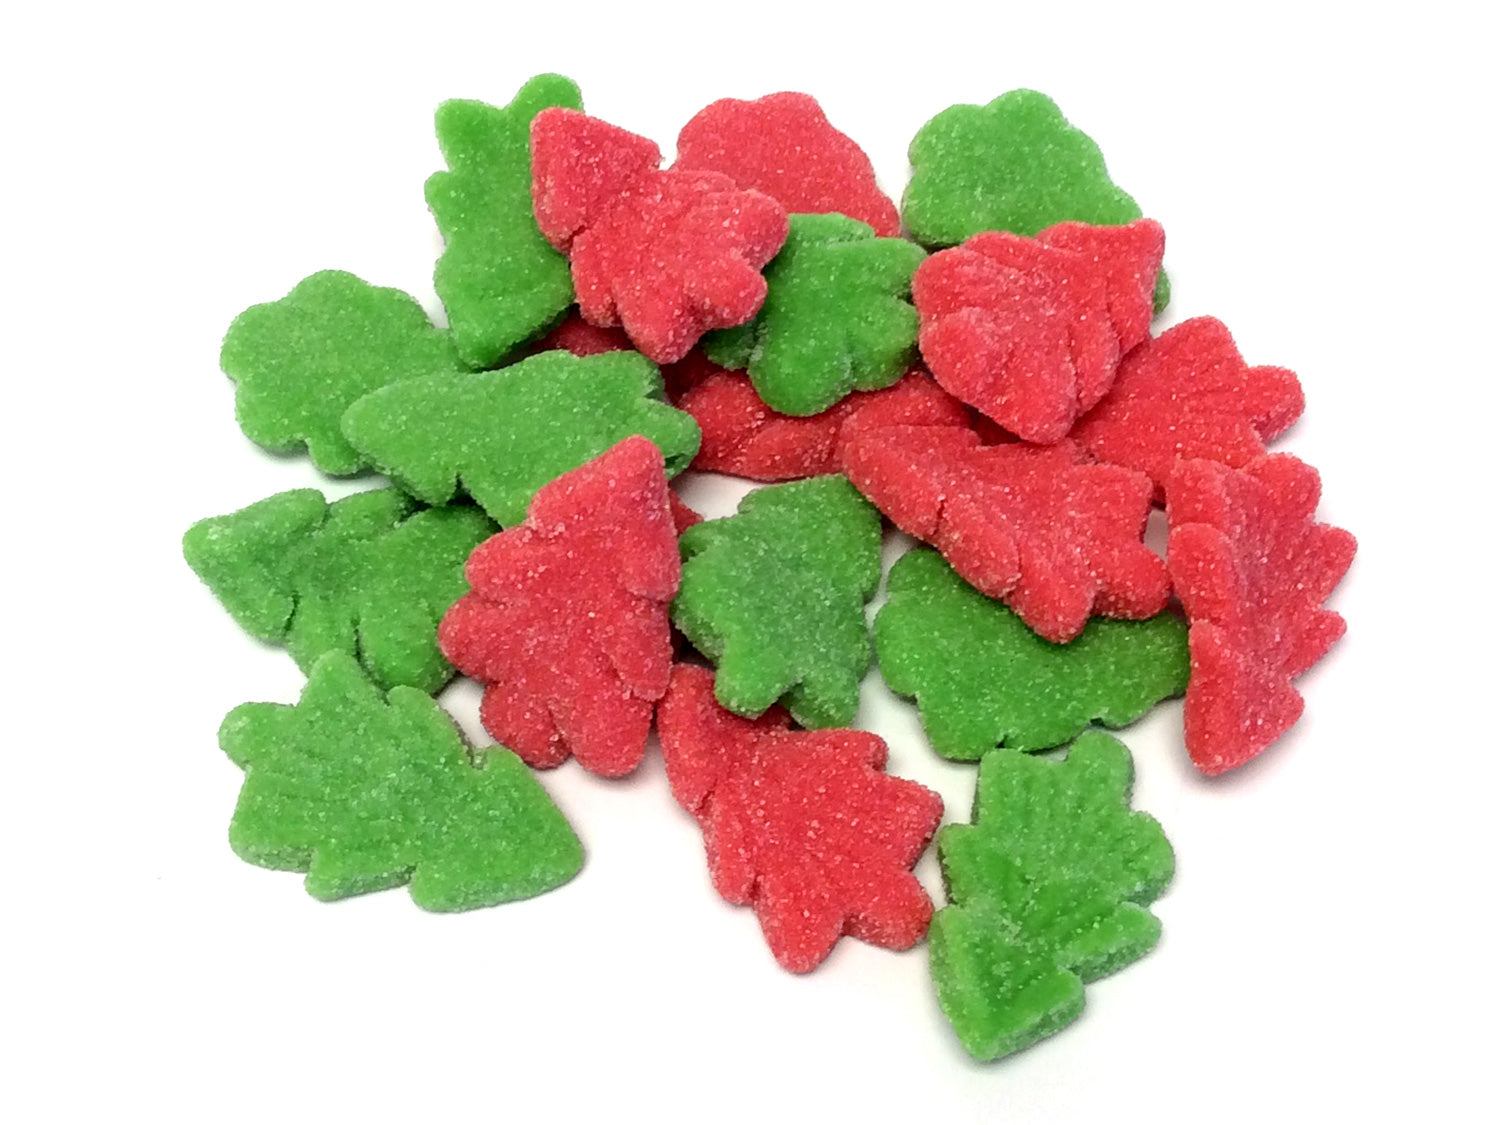 Gummi Christmas Trees - bulk 2 lb bag